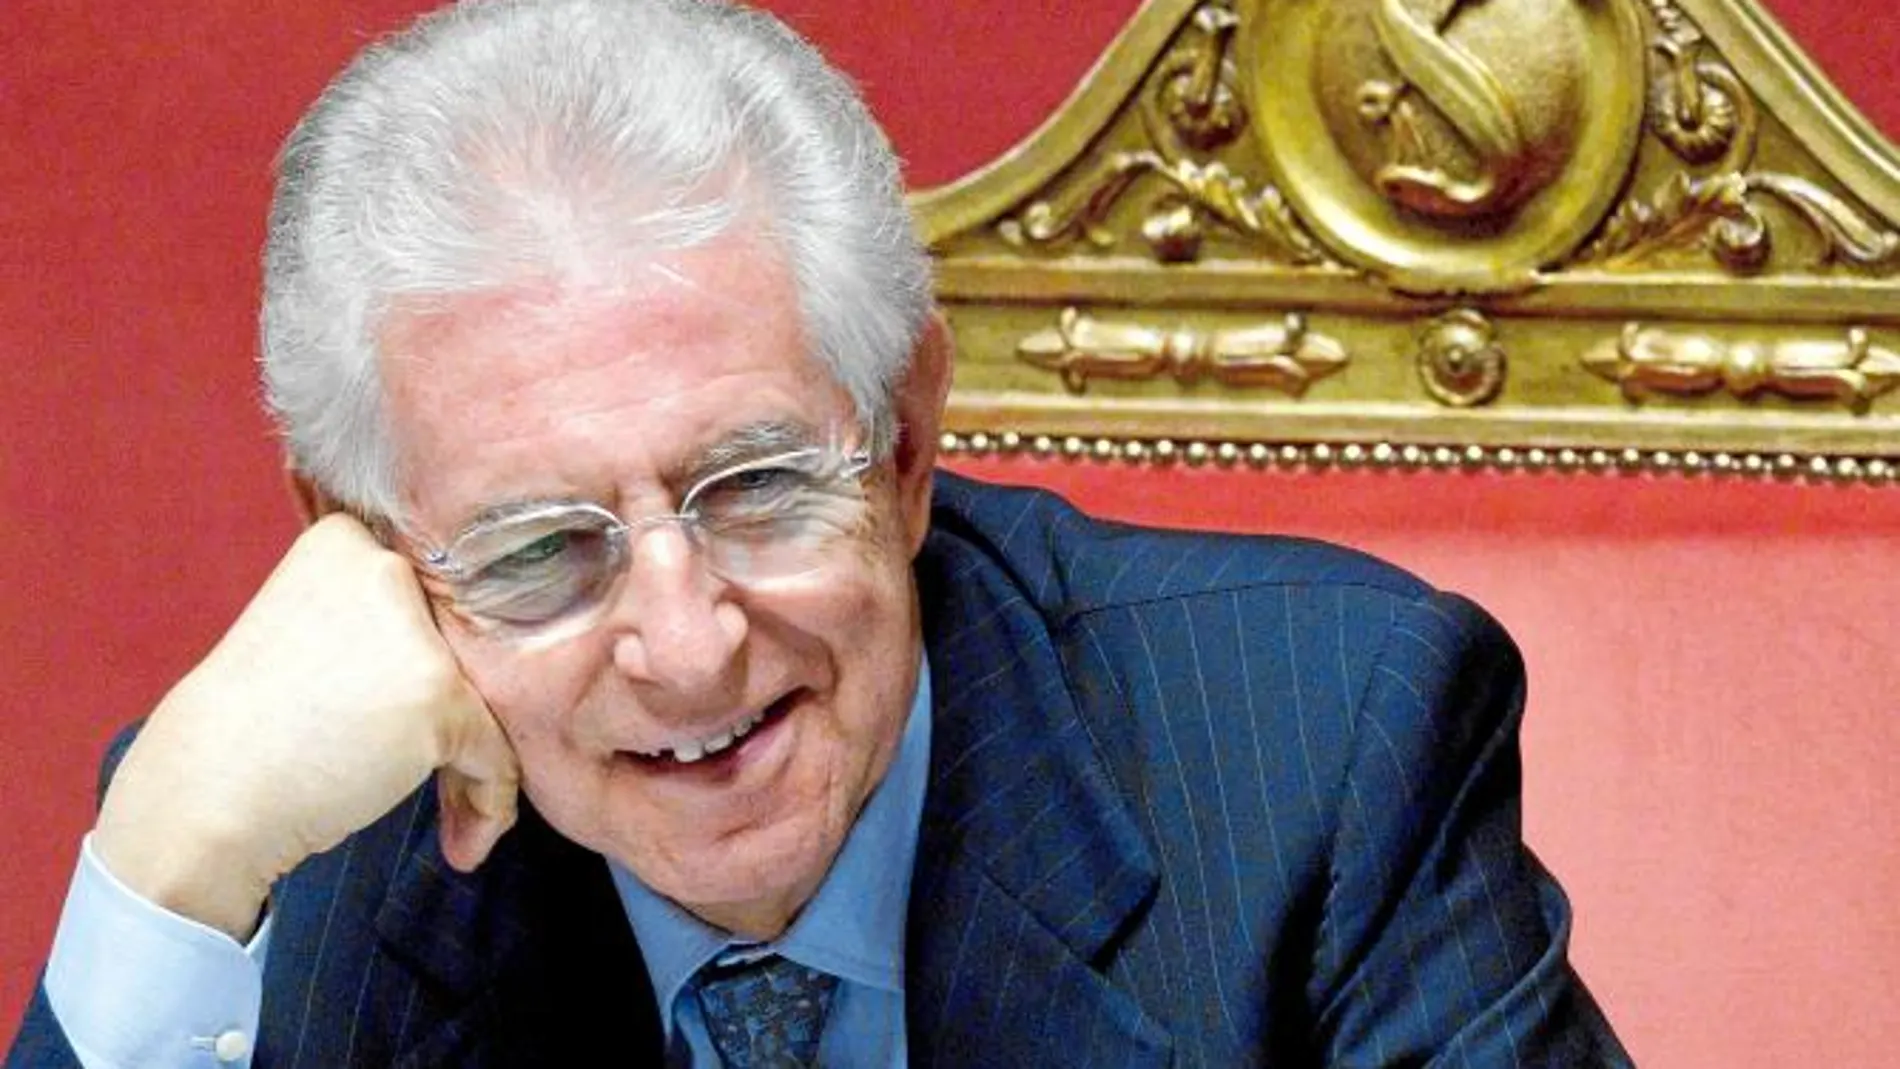 Monti adelgaza en 26000 millones el Estado italiano